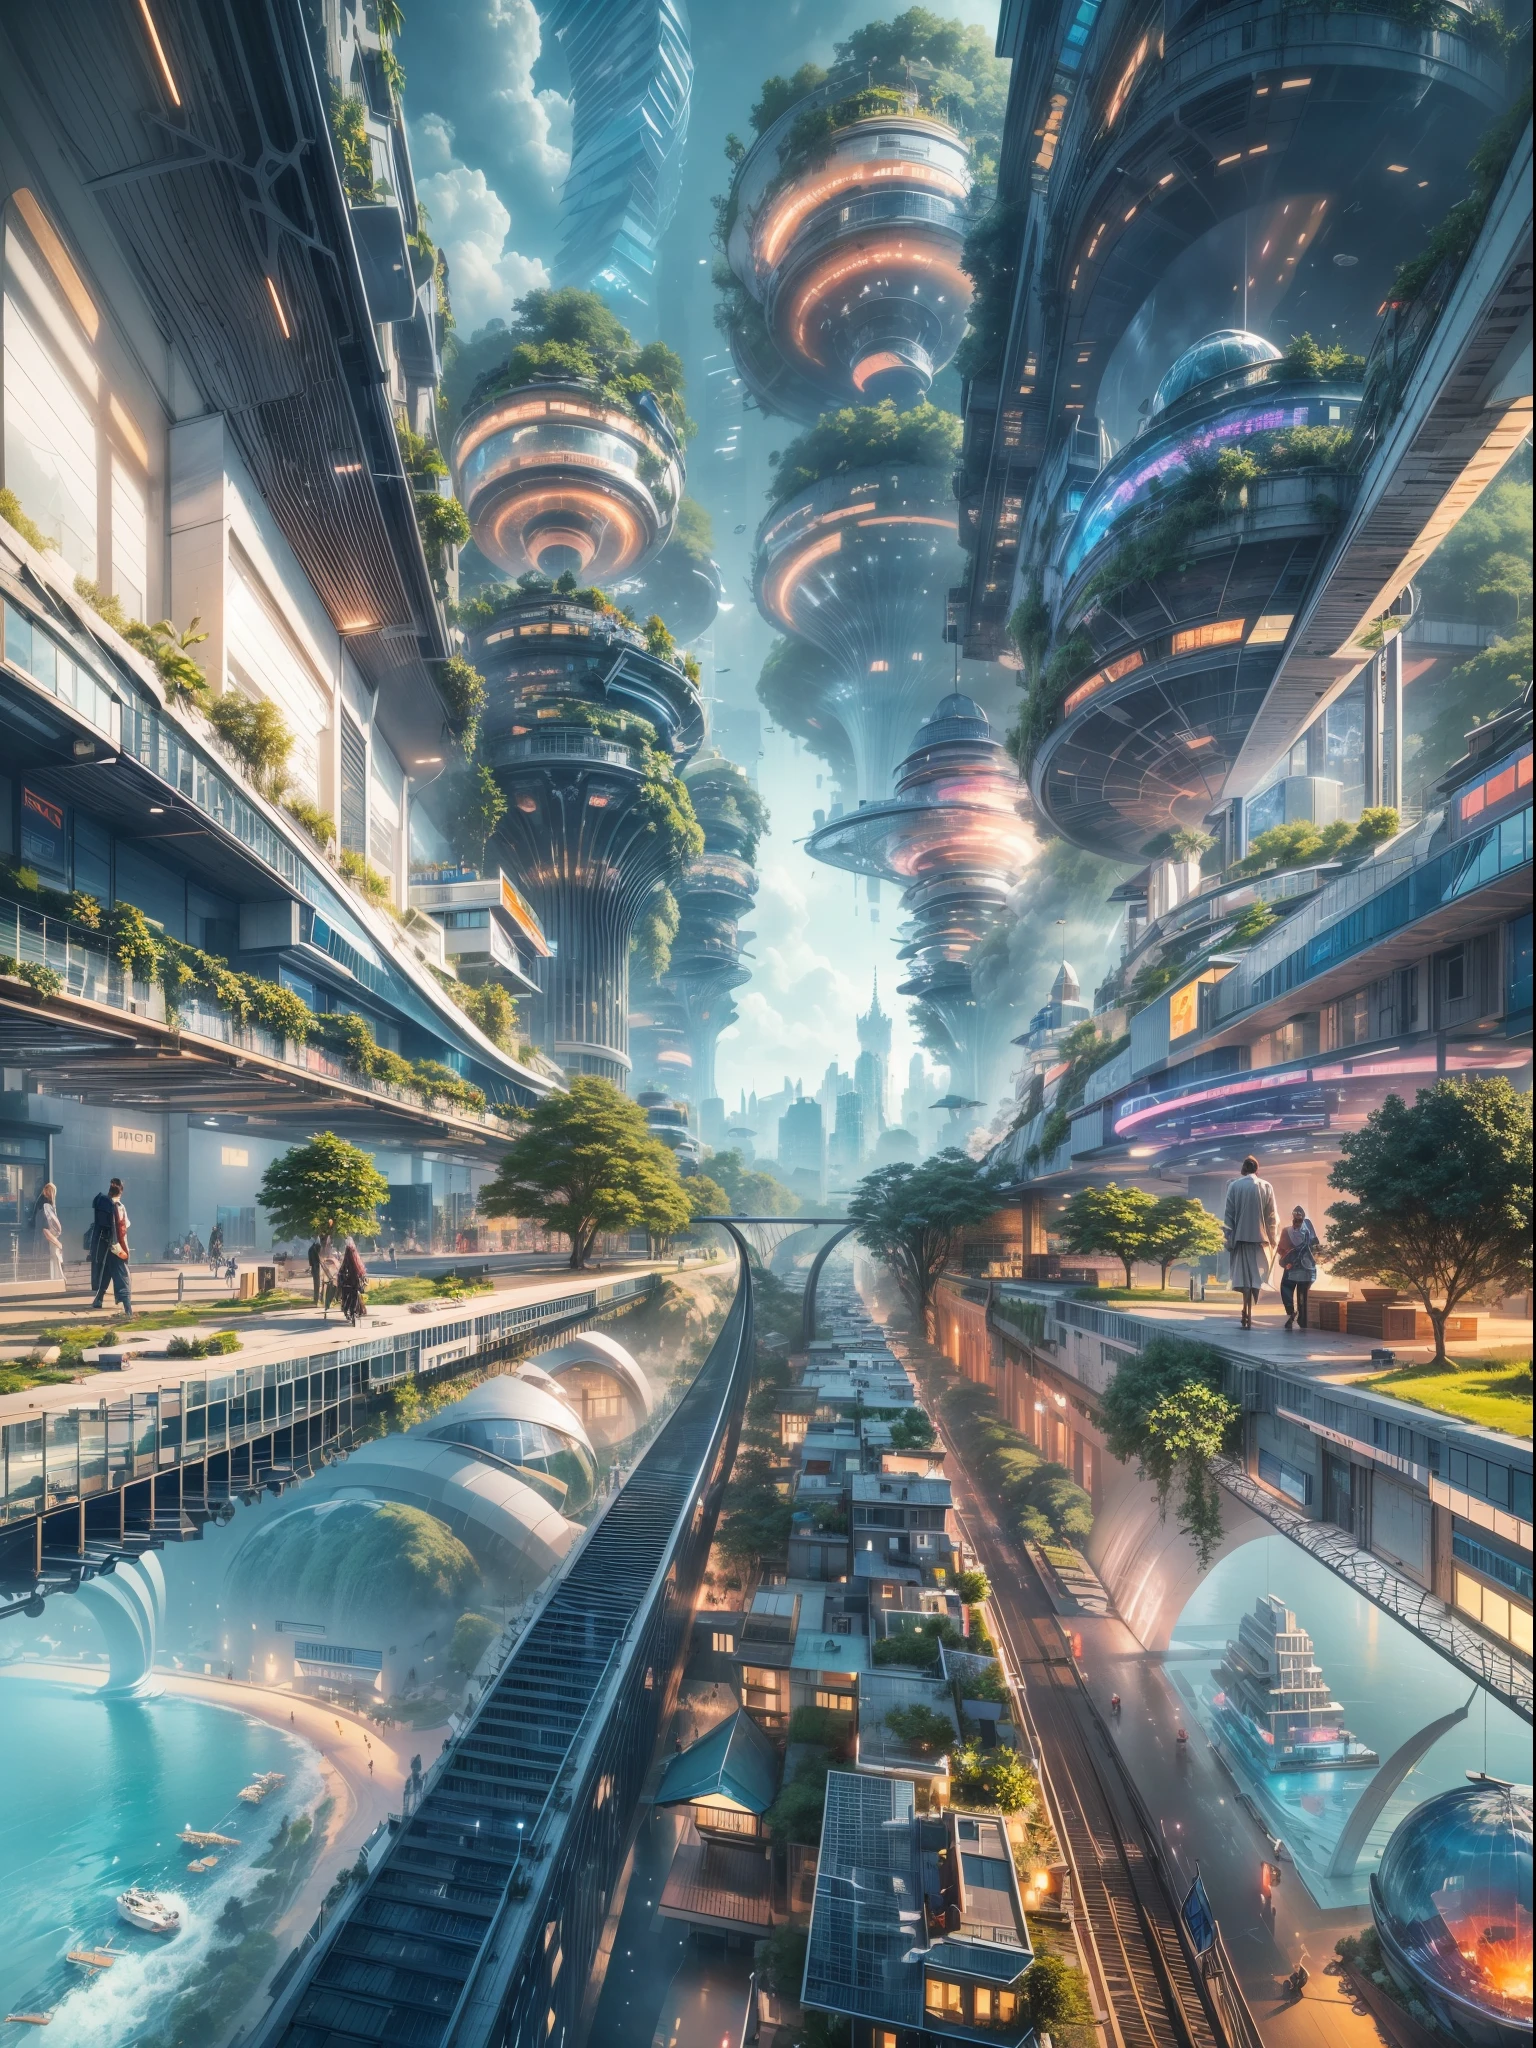 (最高品質,4K,8k,高解像度,傑作:1.2),超詳細,(現実的,photo現実的,photo-現実的:1.37), 壊す,未来的な水上都市,未来の技術,巨大なハイテクな平らなプラットフォーム上の都市,飛行船,空に浮かぶ,未来都市,small 飛行船 around,ハイテク半球形プラットフォーム,カラフルなライト,高度なアーキテクチャ,近代的な建物,高層ビル,雲に届く,畏敬の念を抱かせる景色,都市景観,印象的なデザイン,自然とのシームレスな融合,dynamic and vibrant atmosphere 壊す futuristic transport system,ホバリング車両,透明な通路,豊かな緑,空中庭園,滝,壮大なスカイライン,水面に映る,輝く川,建築の革新,futuristic 高層ビル,透明なドーム,変わった形の建物,高架歩道,印象的なスカイライン,光るライト,未来の技術,ミニマリストデザイン,景色の良い展望台,全景,雲を突き抜ける塔, 壊す vibrant colors,壮大な日の出,壮大な夕日,まばゆいばかりの光の展示,魔法のような雰囲気,未来の都市,都会のユートピア,贅沢なライフスタイル,革新的なエネルギー源,持続可能な発展,スマートシティテクノロジー,高度なインフラストラクチャ,静かな雰囲気,自然と技術の調和のとれた共存,畏敬の念を抱かせる街並み,前例のない都市計画,建物と自然のシームレスなつながり,ハイテク都市,最先端の工学の驚異,都市生活の未来,先見性のある建築コンセプト,エネルギー効率の高い建物,harmony with the environment 壊す,雲の上に浮かぶ街,ユートピアの夢が現実になった,無限の可能性,高度な交通ネットワーク,グリーンエネルギーの統合,革新的な素材,印象的なホログラフィックディスプレイ,高度な通信システム,息を呑むような空中景観,平和で穏やかな環境,モダニズムの美学,天上の美しさ